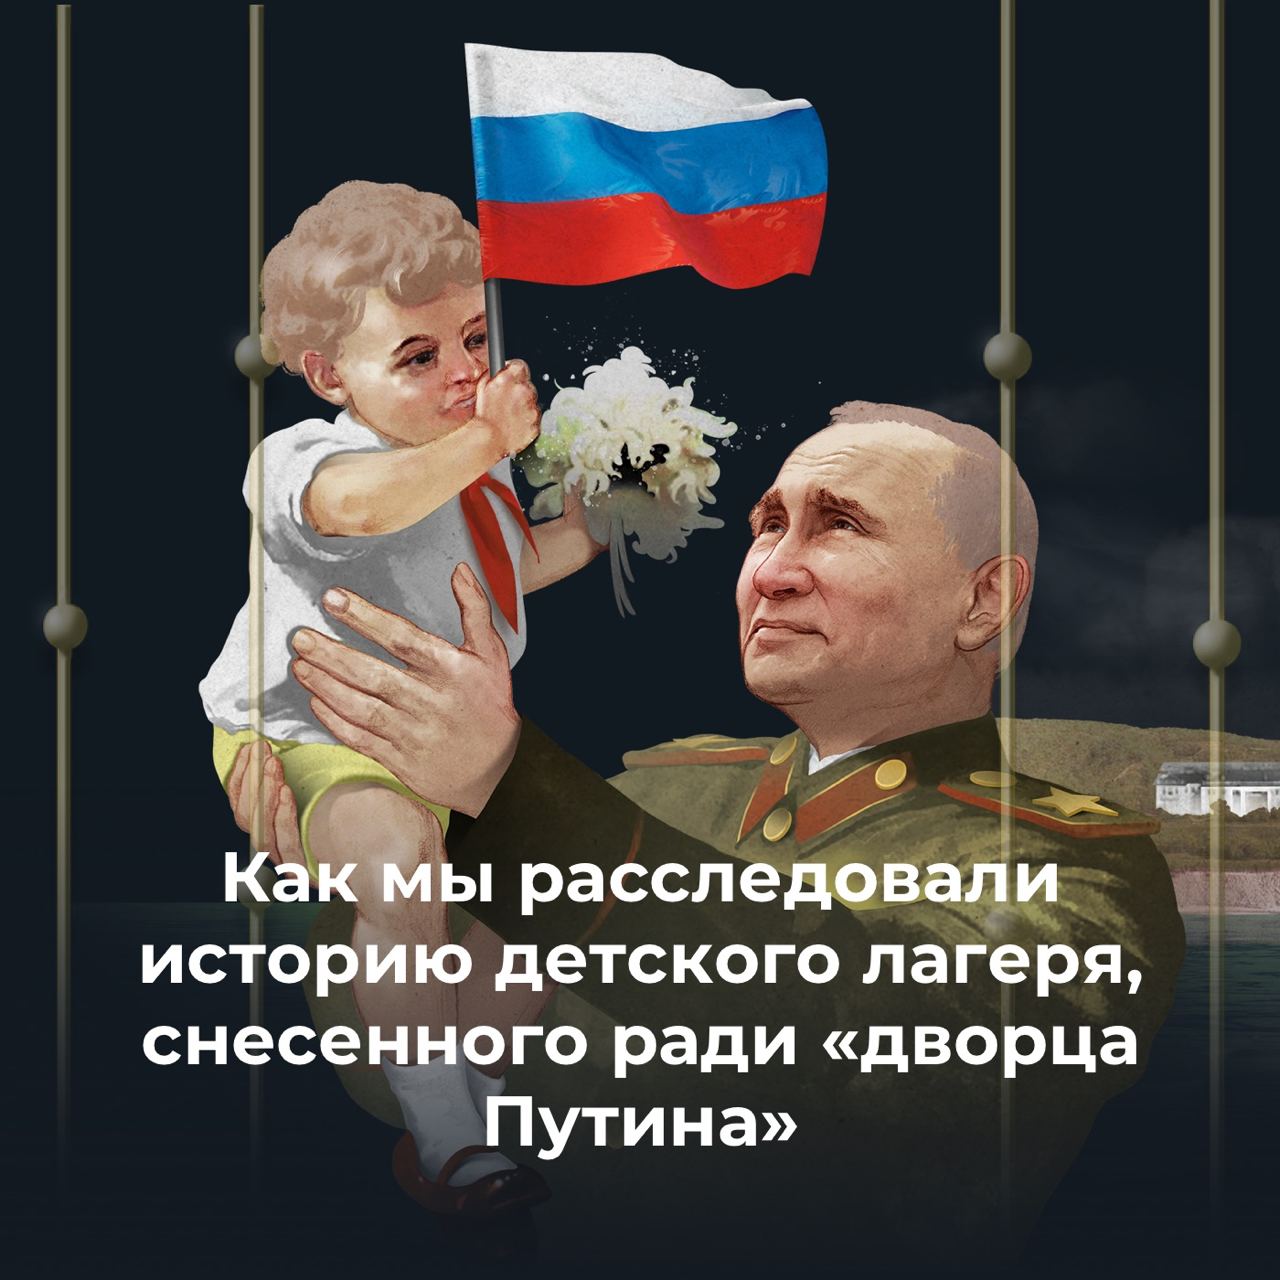 Как мы делали расследование о детском лагере, снесенном ради «дворца Путина»